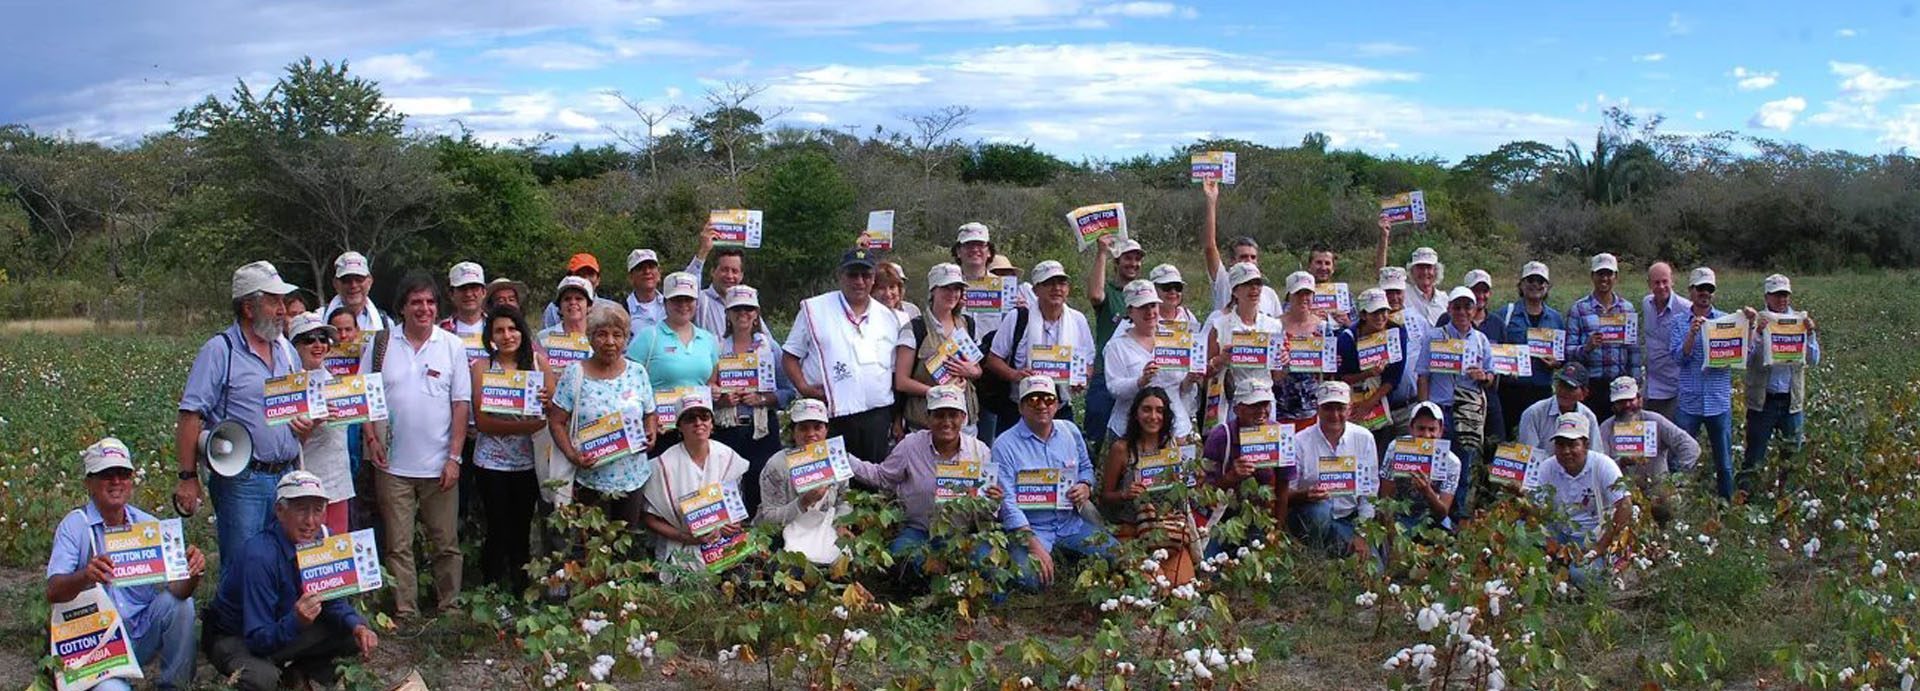 Foto de grupo al final del Día de Campo, El Guamo, Colombia 2015 